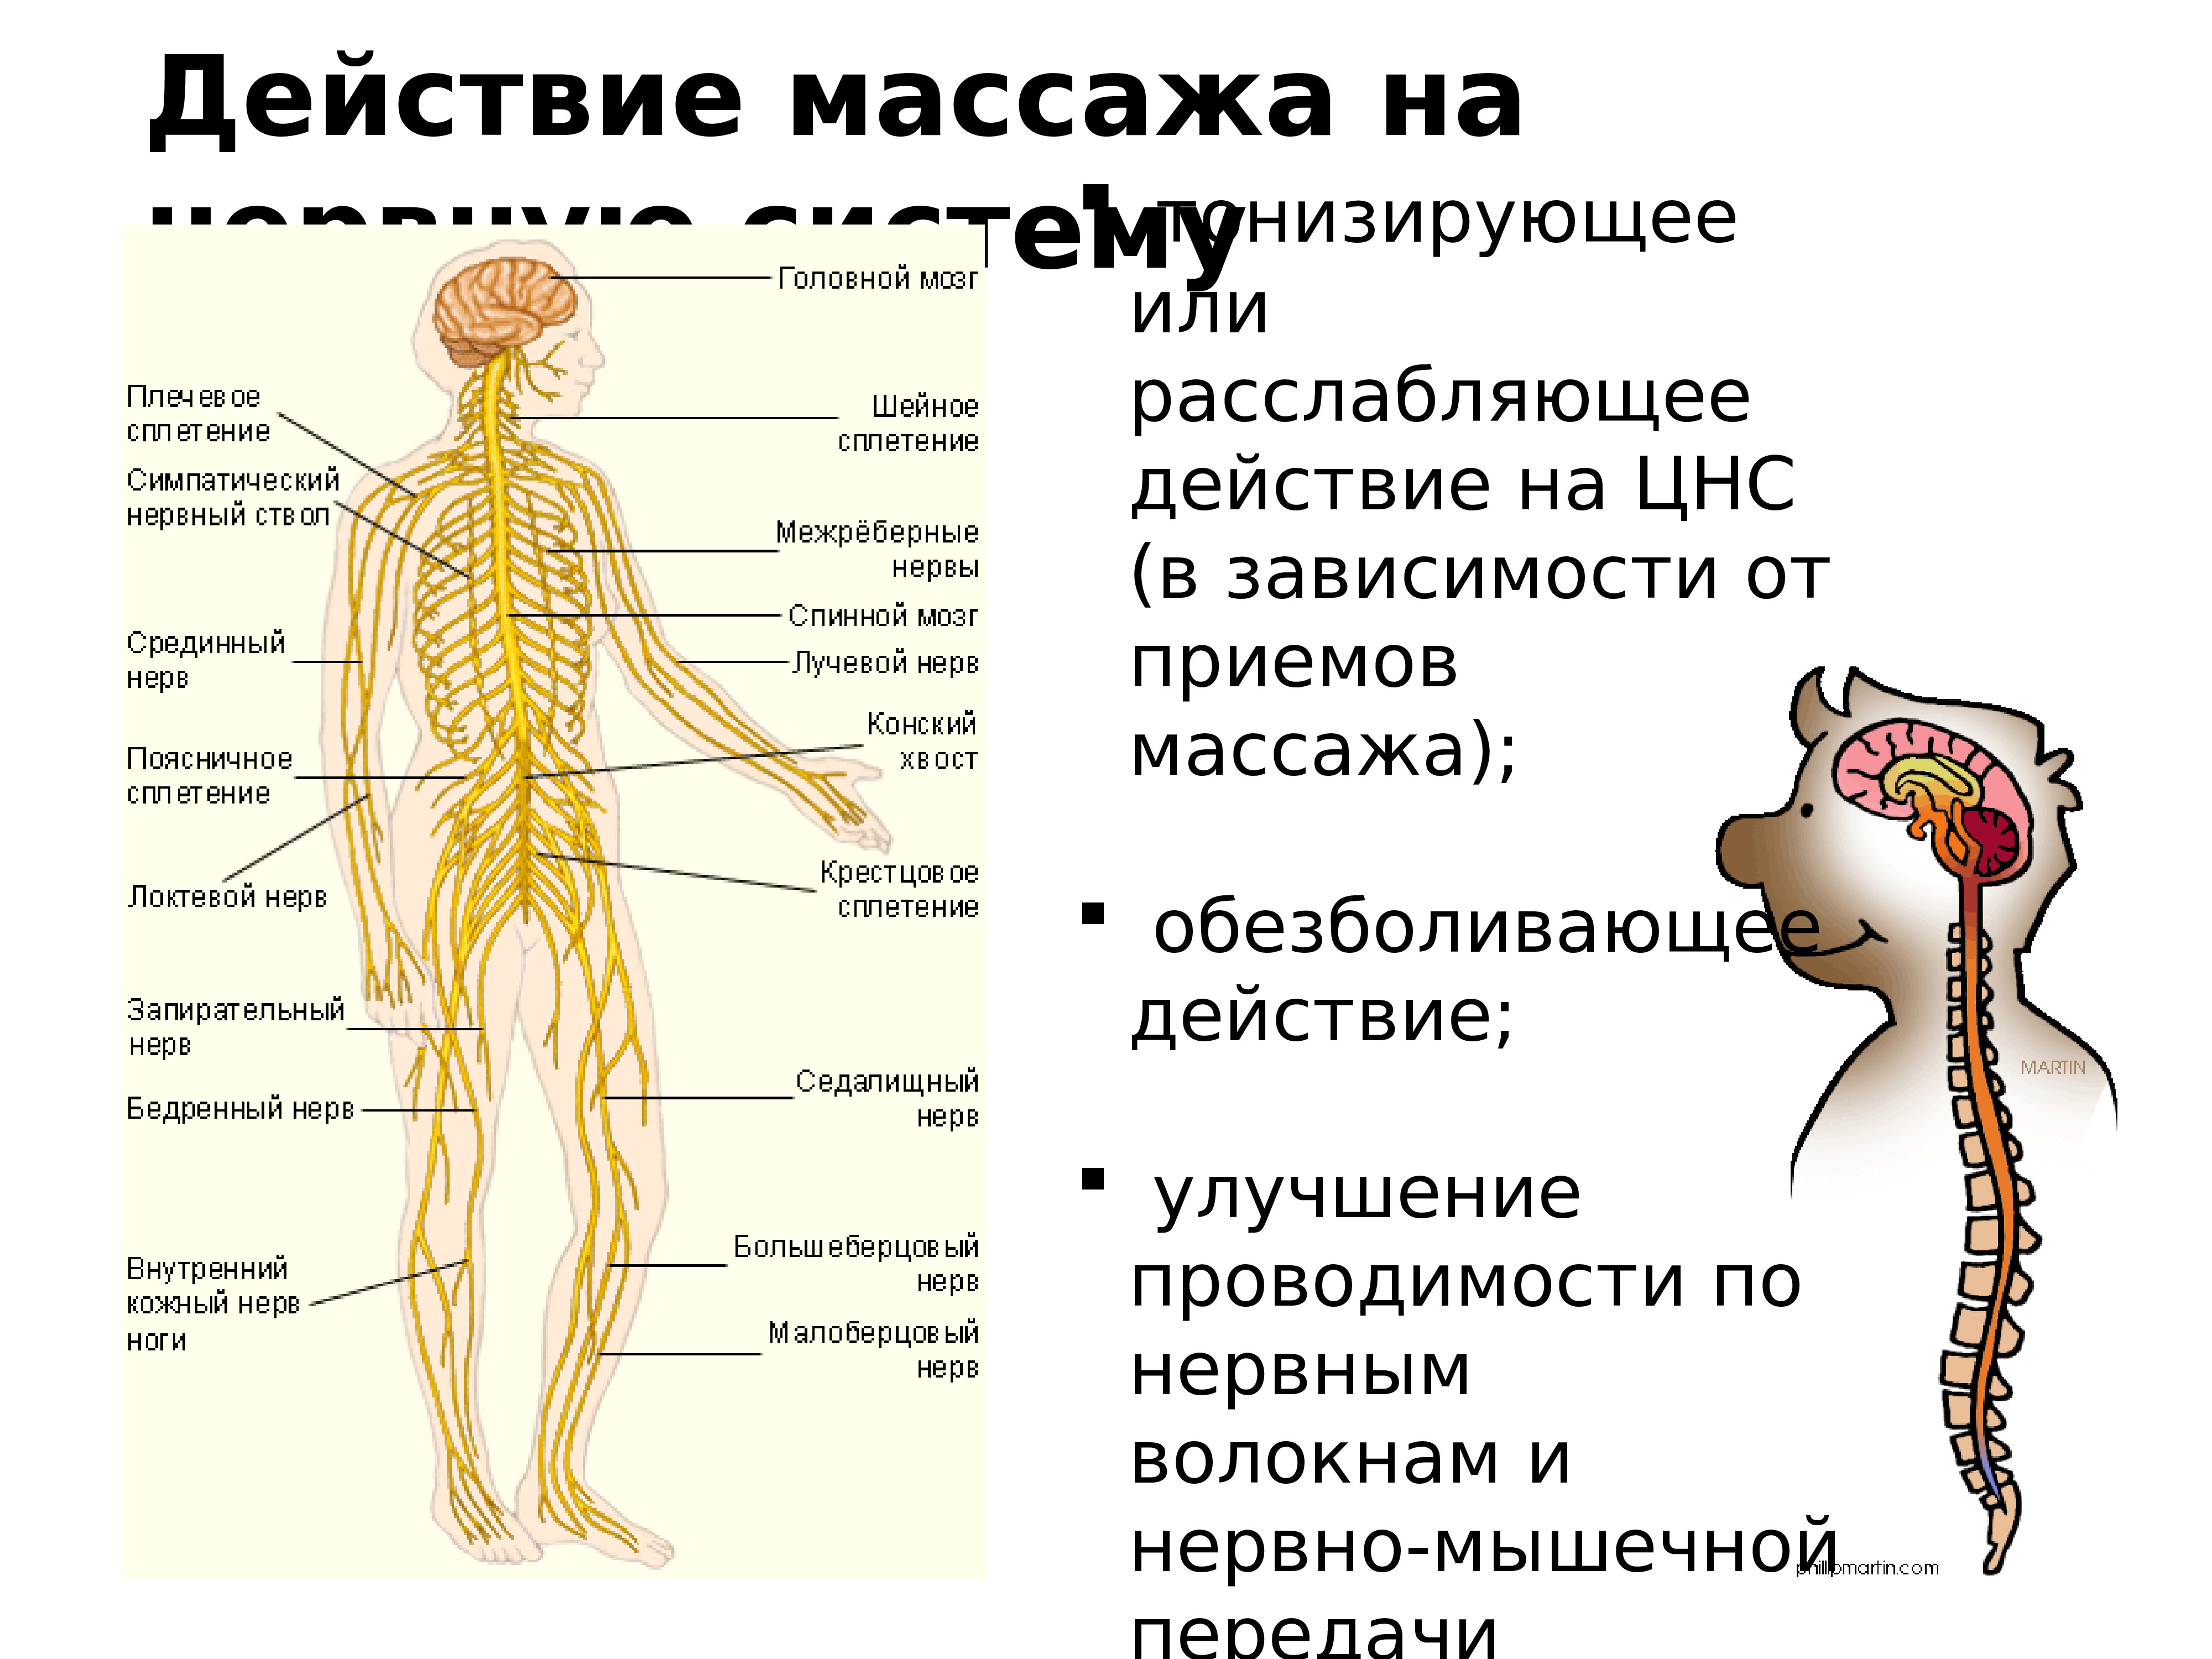 Массажные действия. Действие массажа на организм. Воздействие массажа на организм человека. Механизм воздействия массажа на организм. Массаж и нервная система.